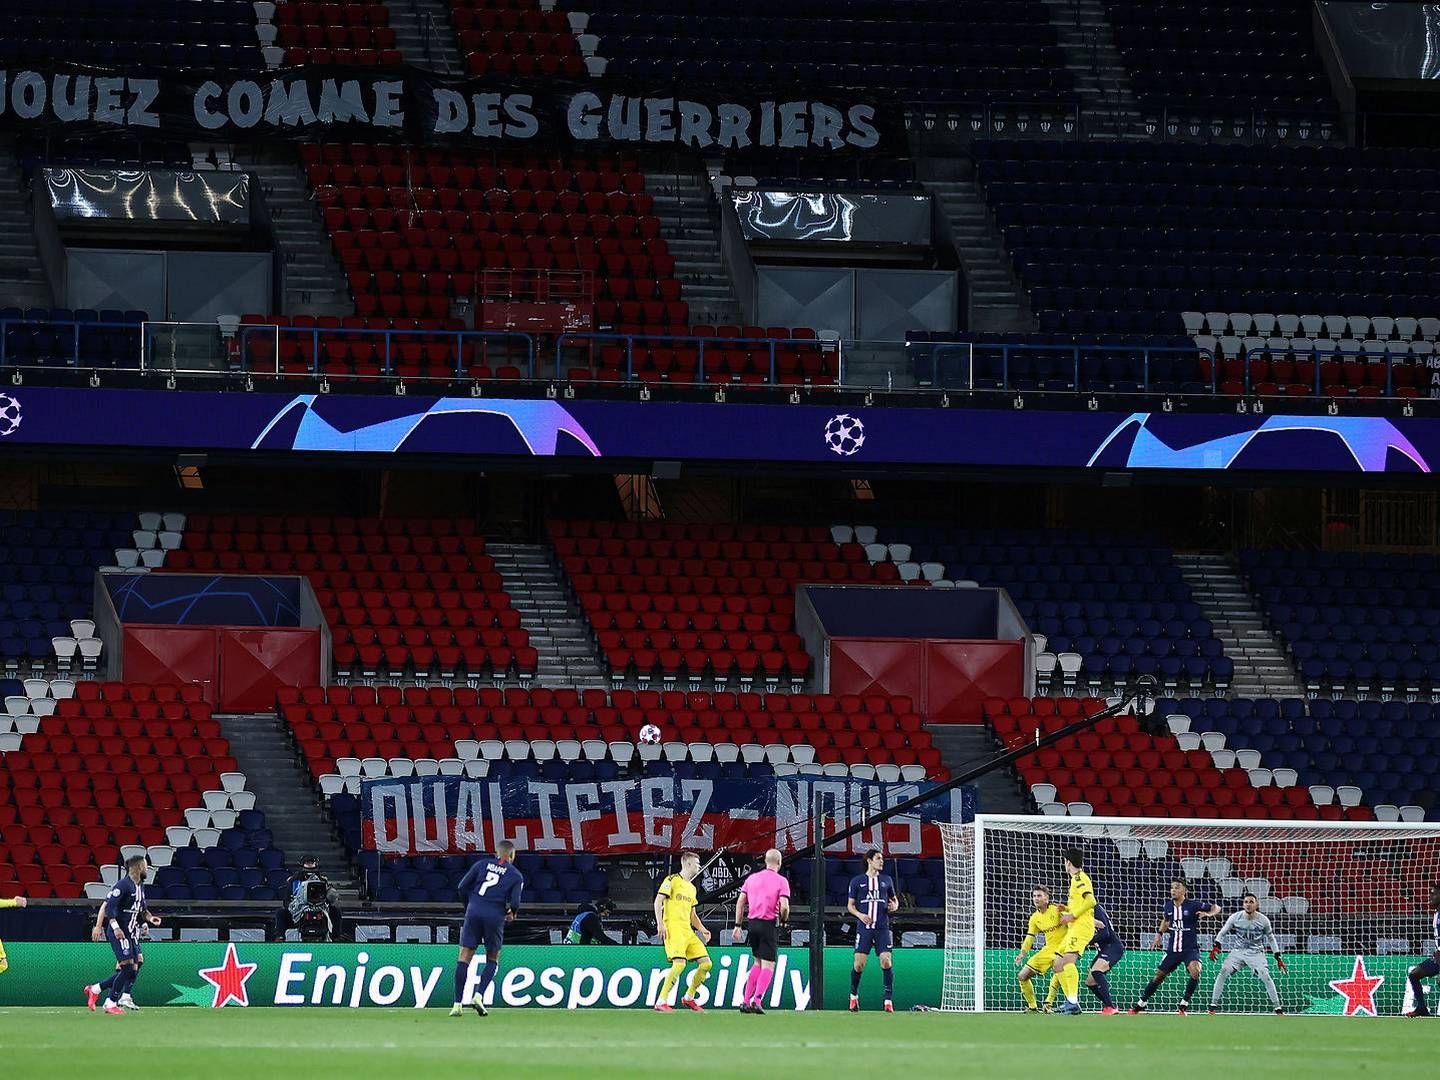 Nent har rettighederne til blandt andet Champions League – her en kamp i sidste uge mellem Paris St. Germain og Borussia Dortmund, der blev spillet uden tilskuere på tribunerne. | Foto: Handout/UEFA/Ritzau Scanpix